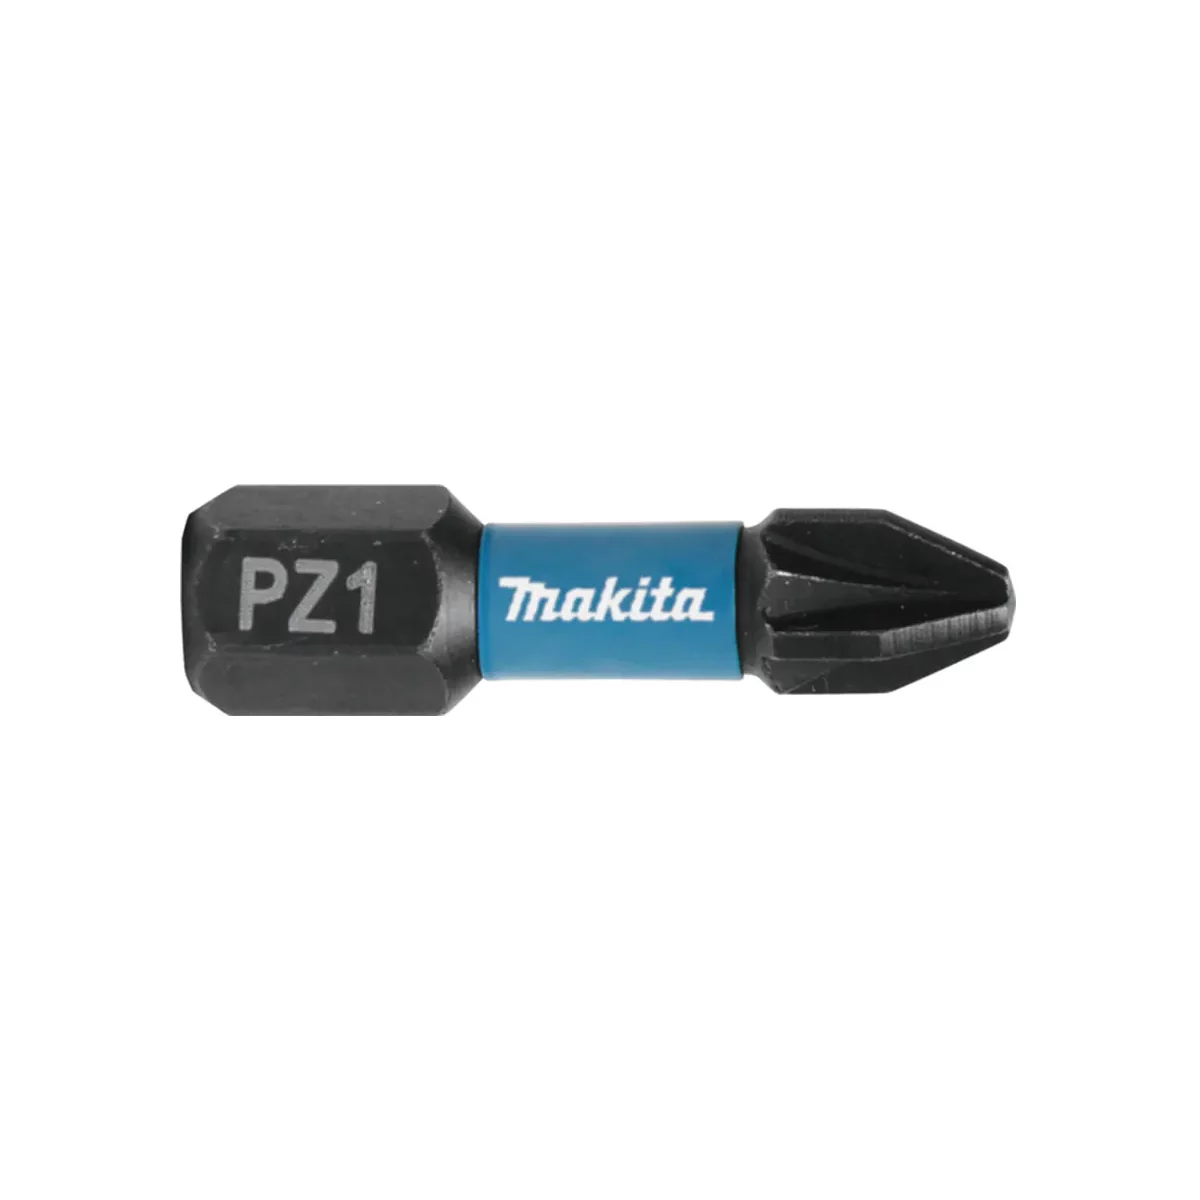 makita impact screw bit pz1 25mm 2pcs c form b 63638